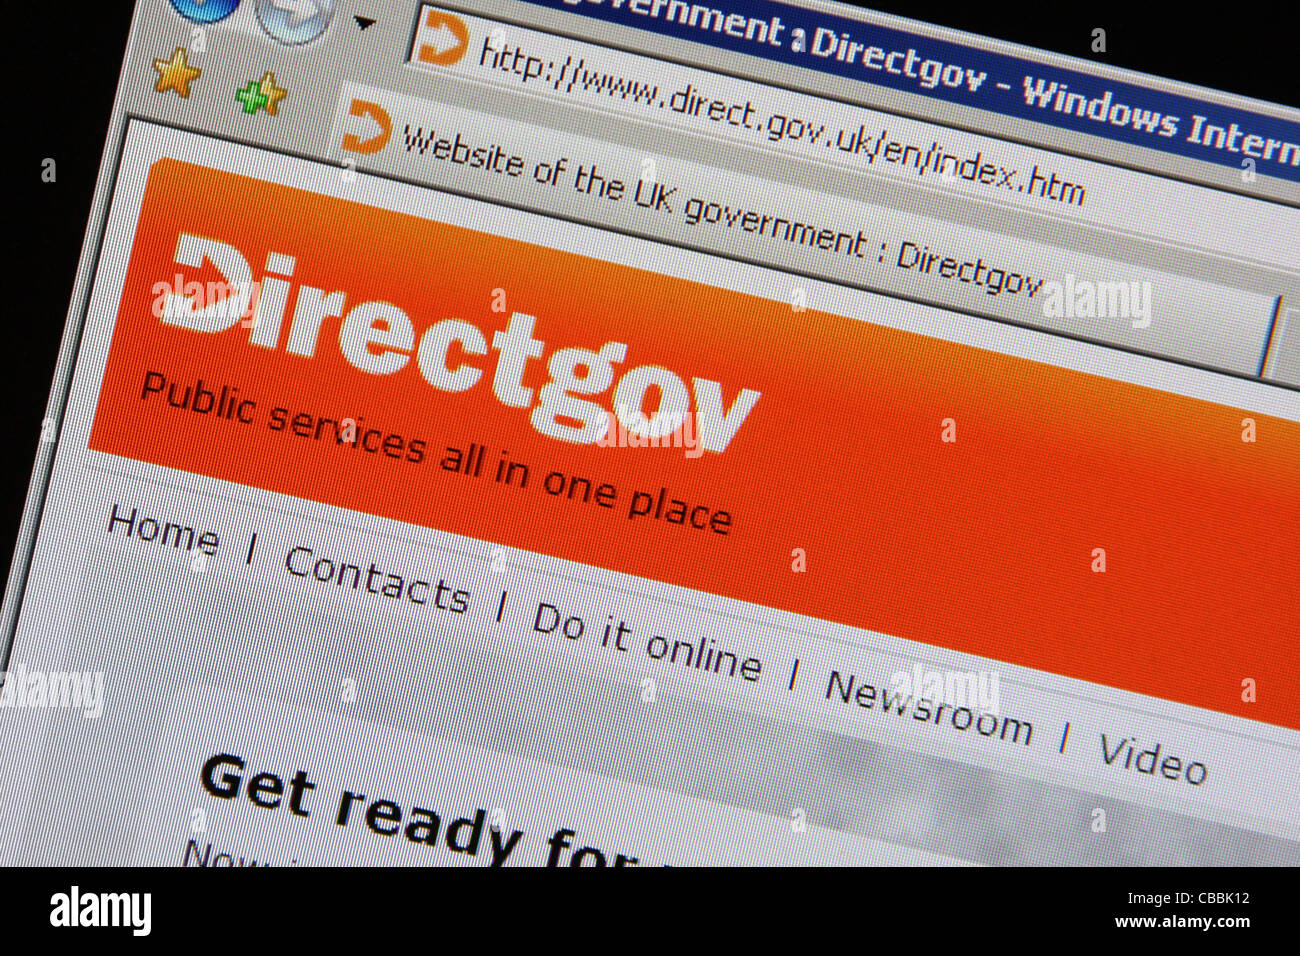 Directgov direct.gov.uk Webseite Stockfoto